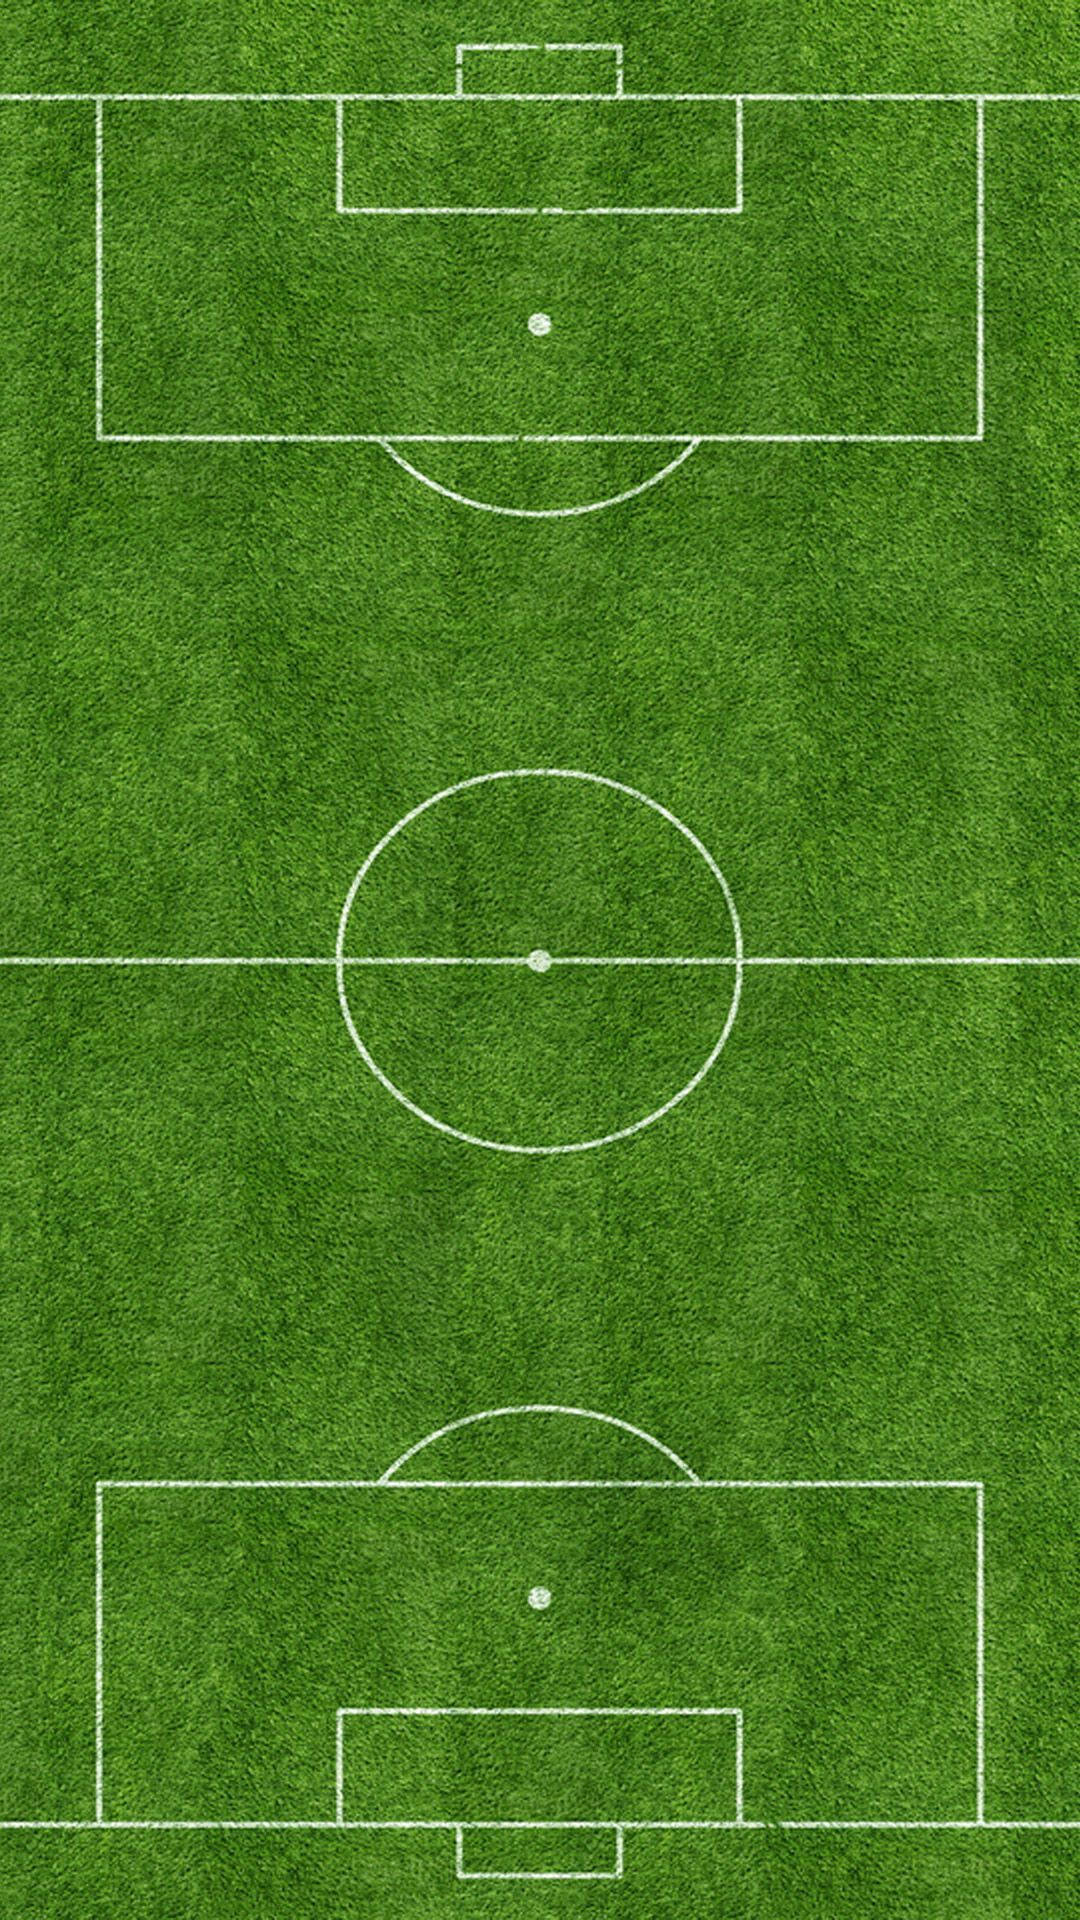 Soccer Stadium Diagram Background